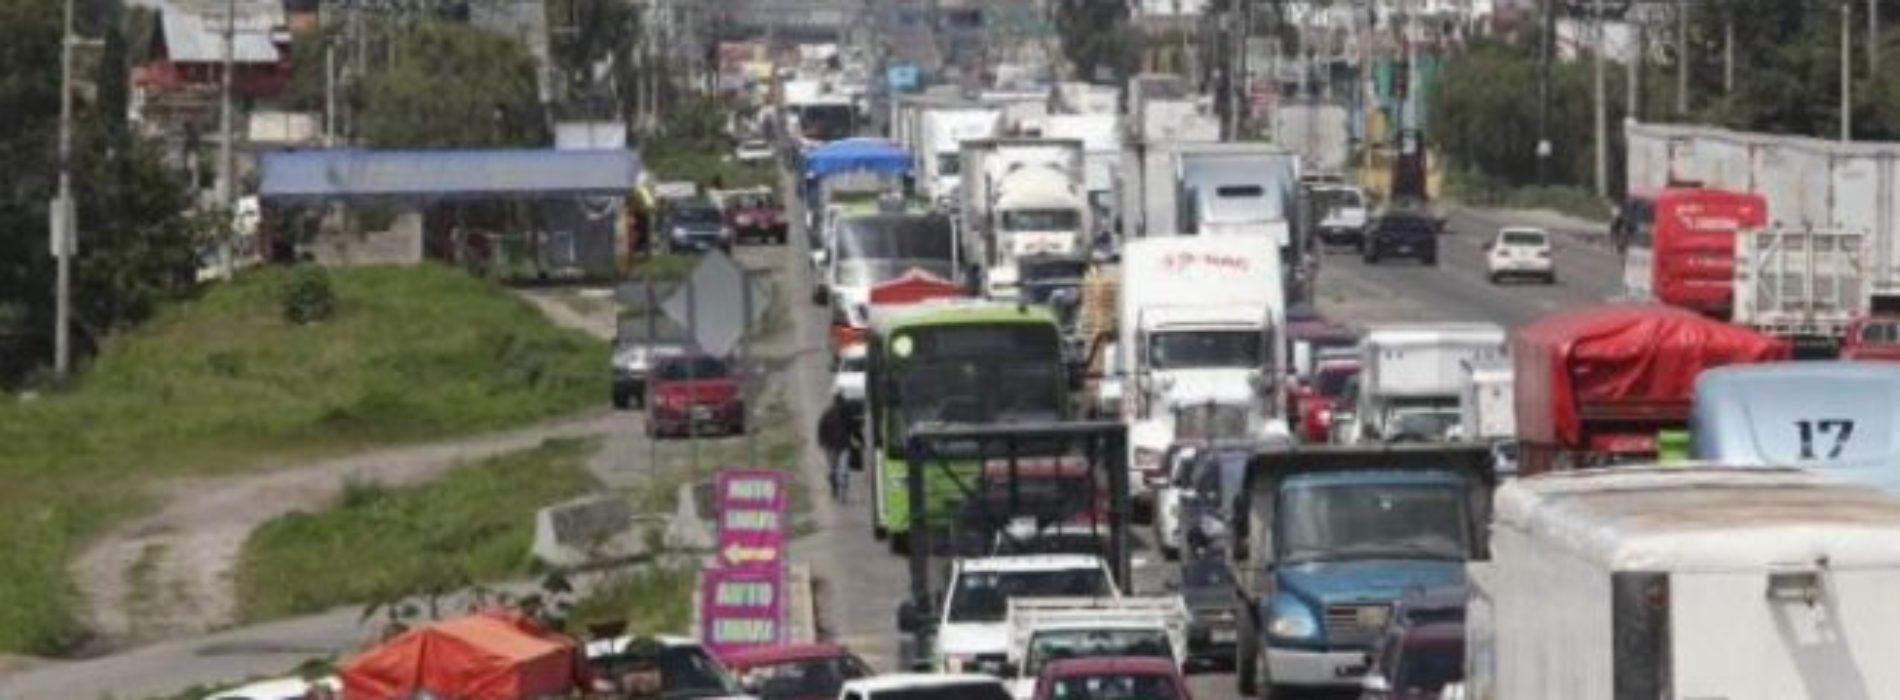 Protestan en defensa de acusado de triple homicidio en
Juchitán